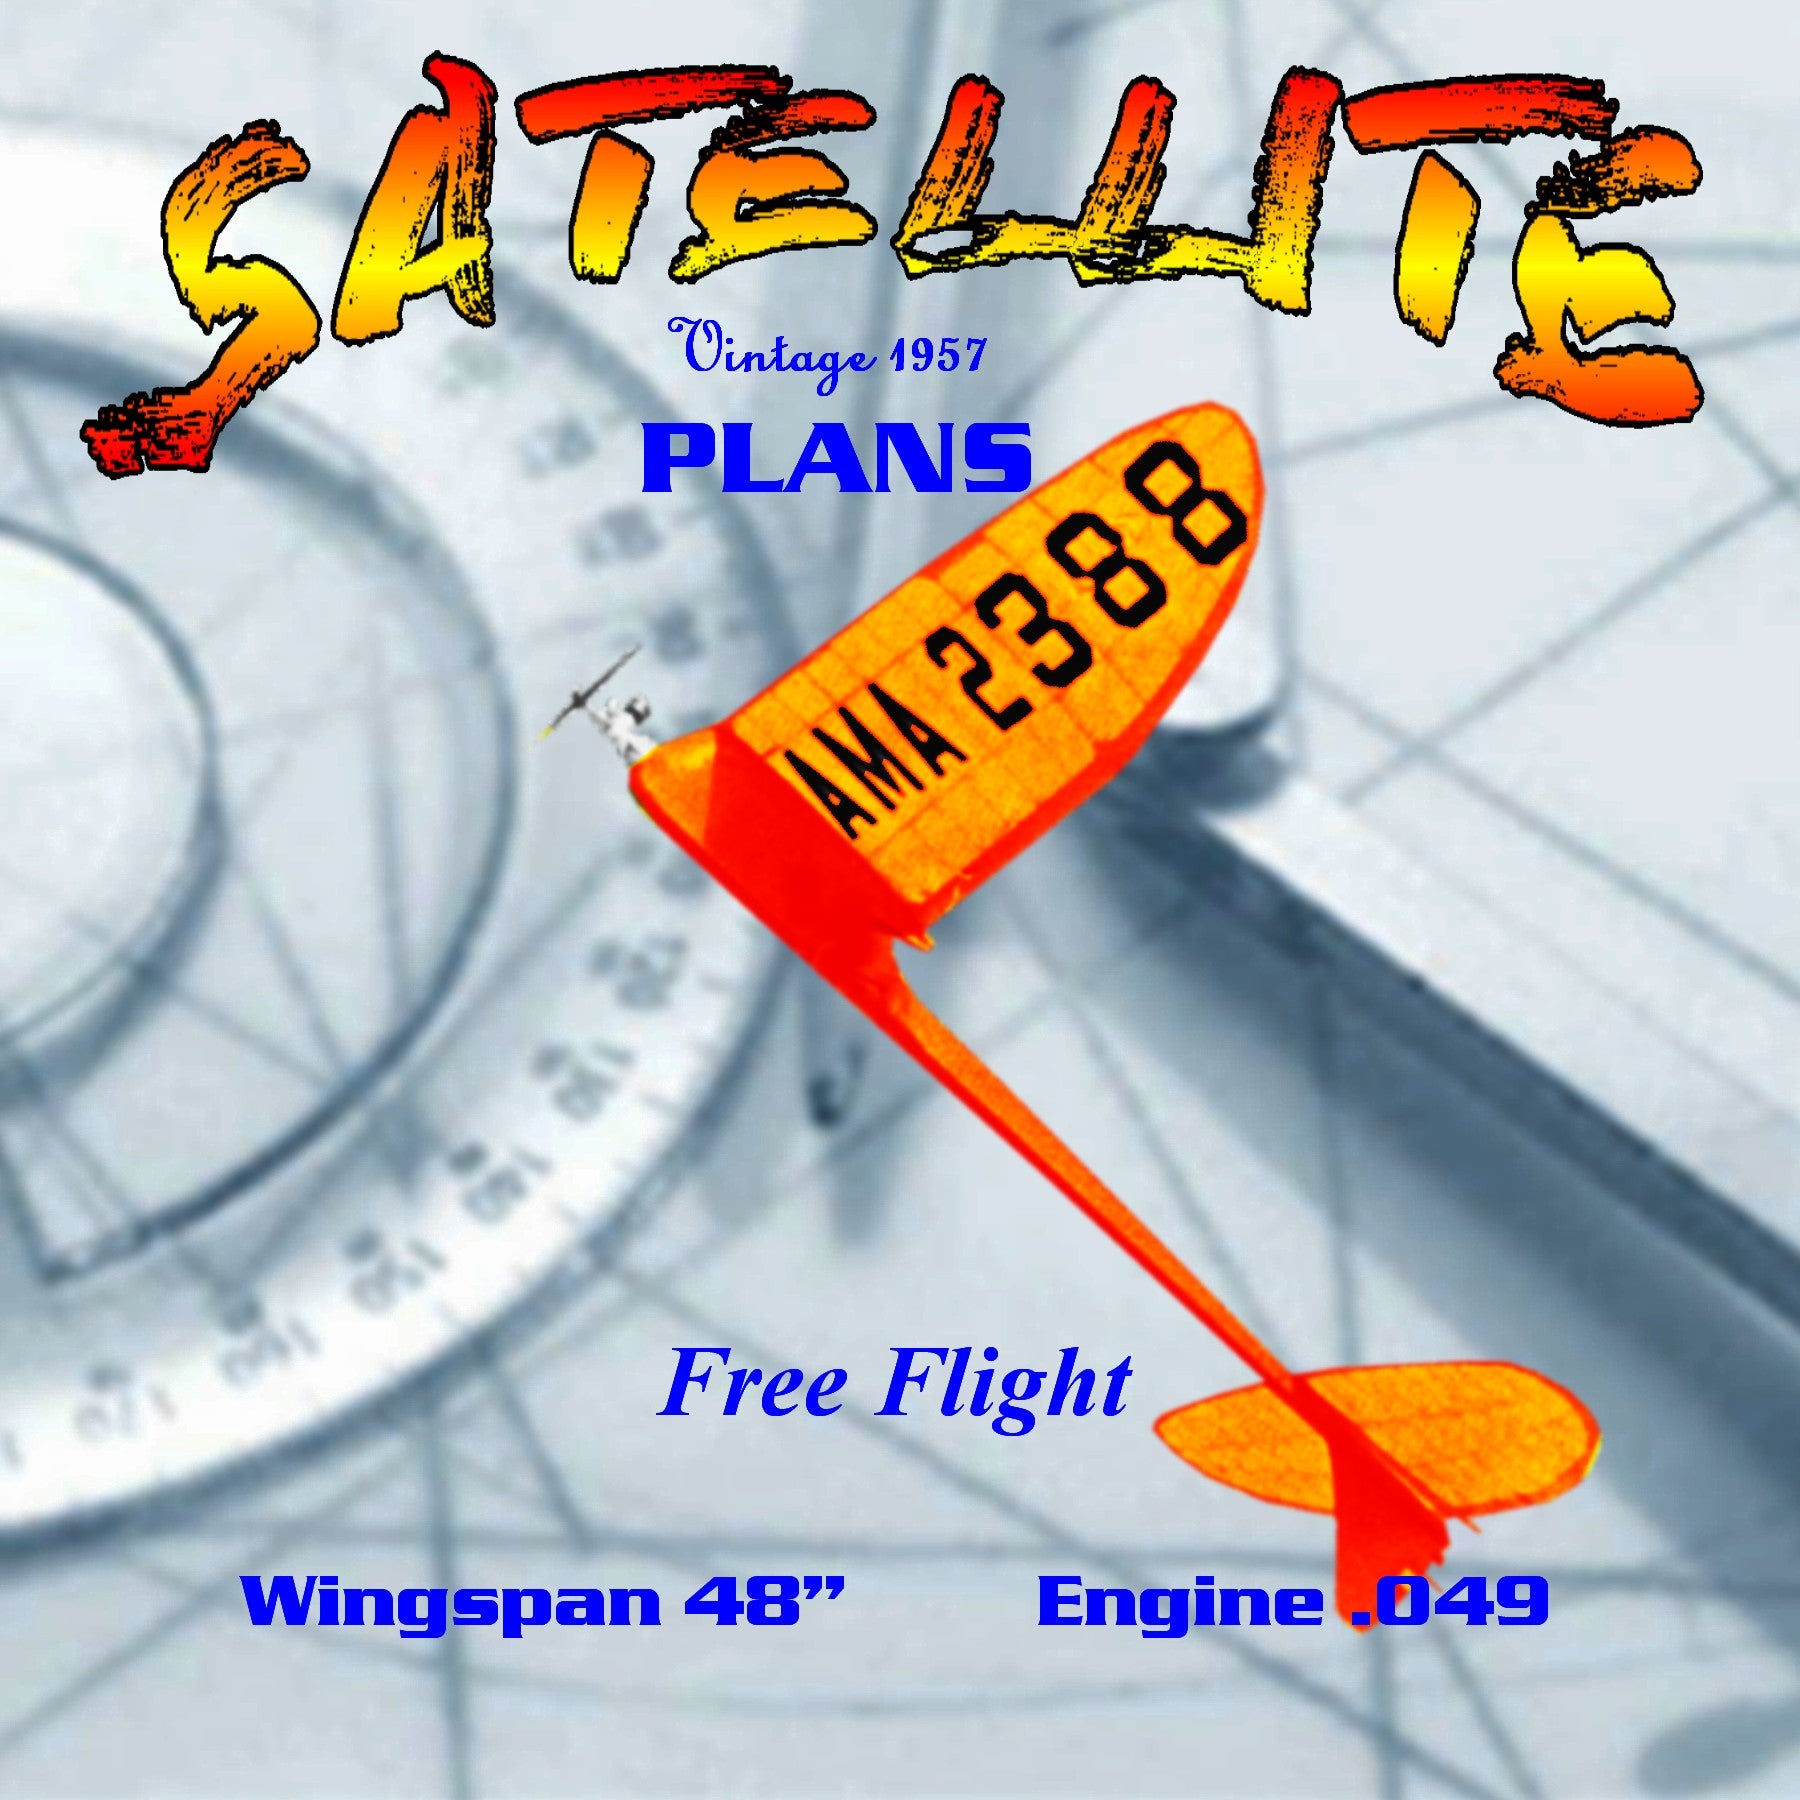 full size printed plan  1957 satellite (styrofoam) free flight  wingspan 48”  engine ½ a